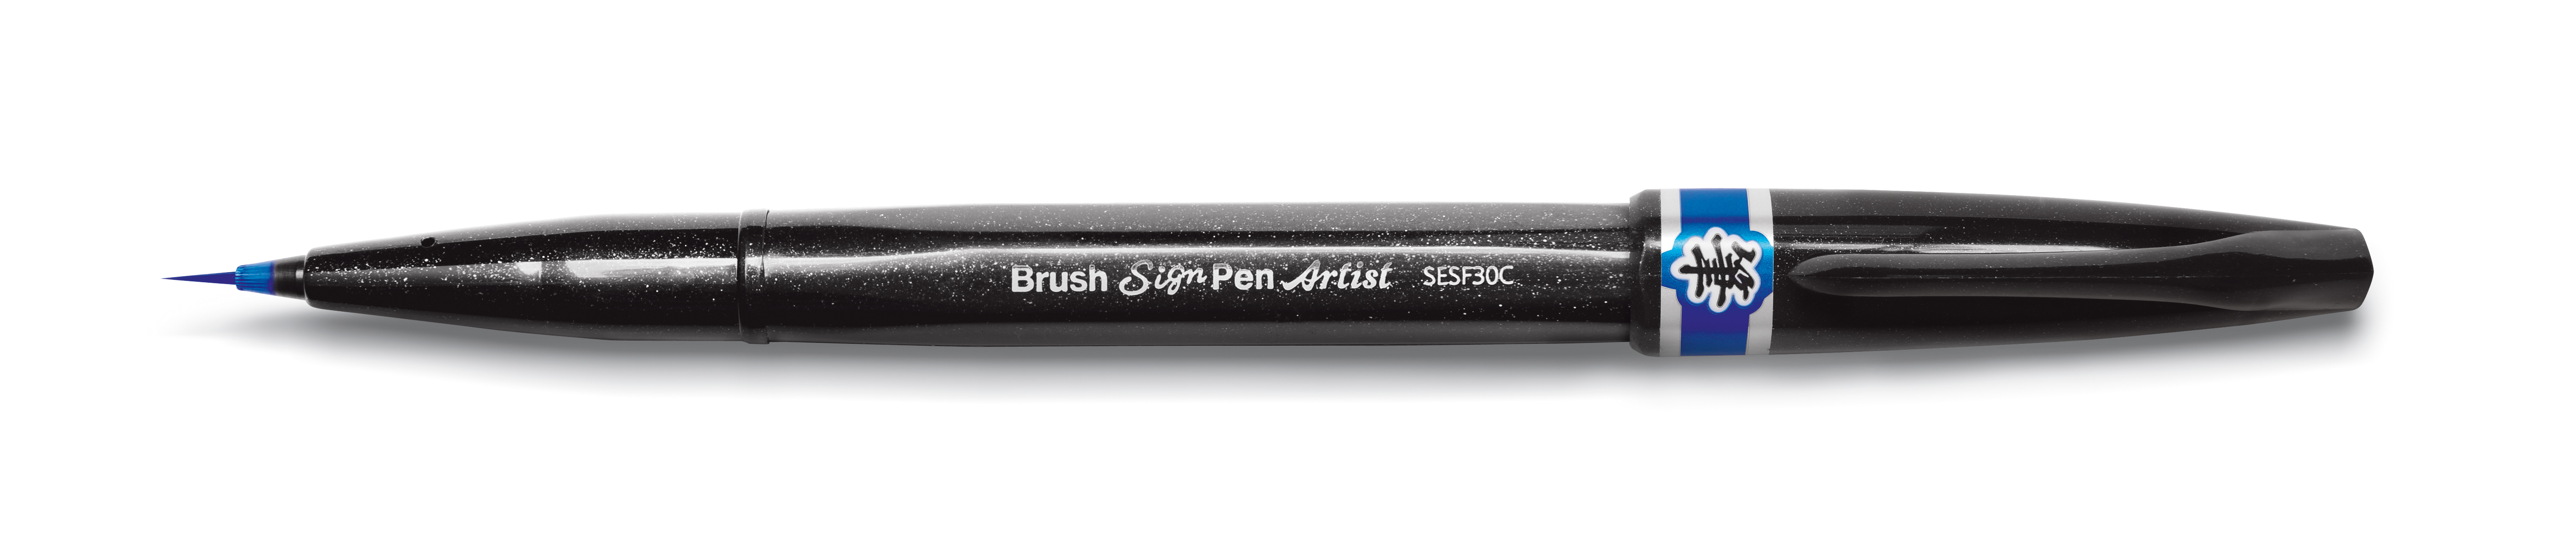 Brushpens Brush Sign Pen Artist